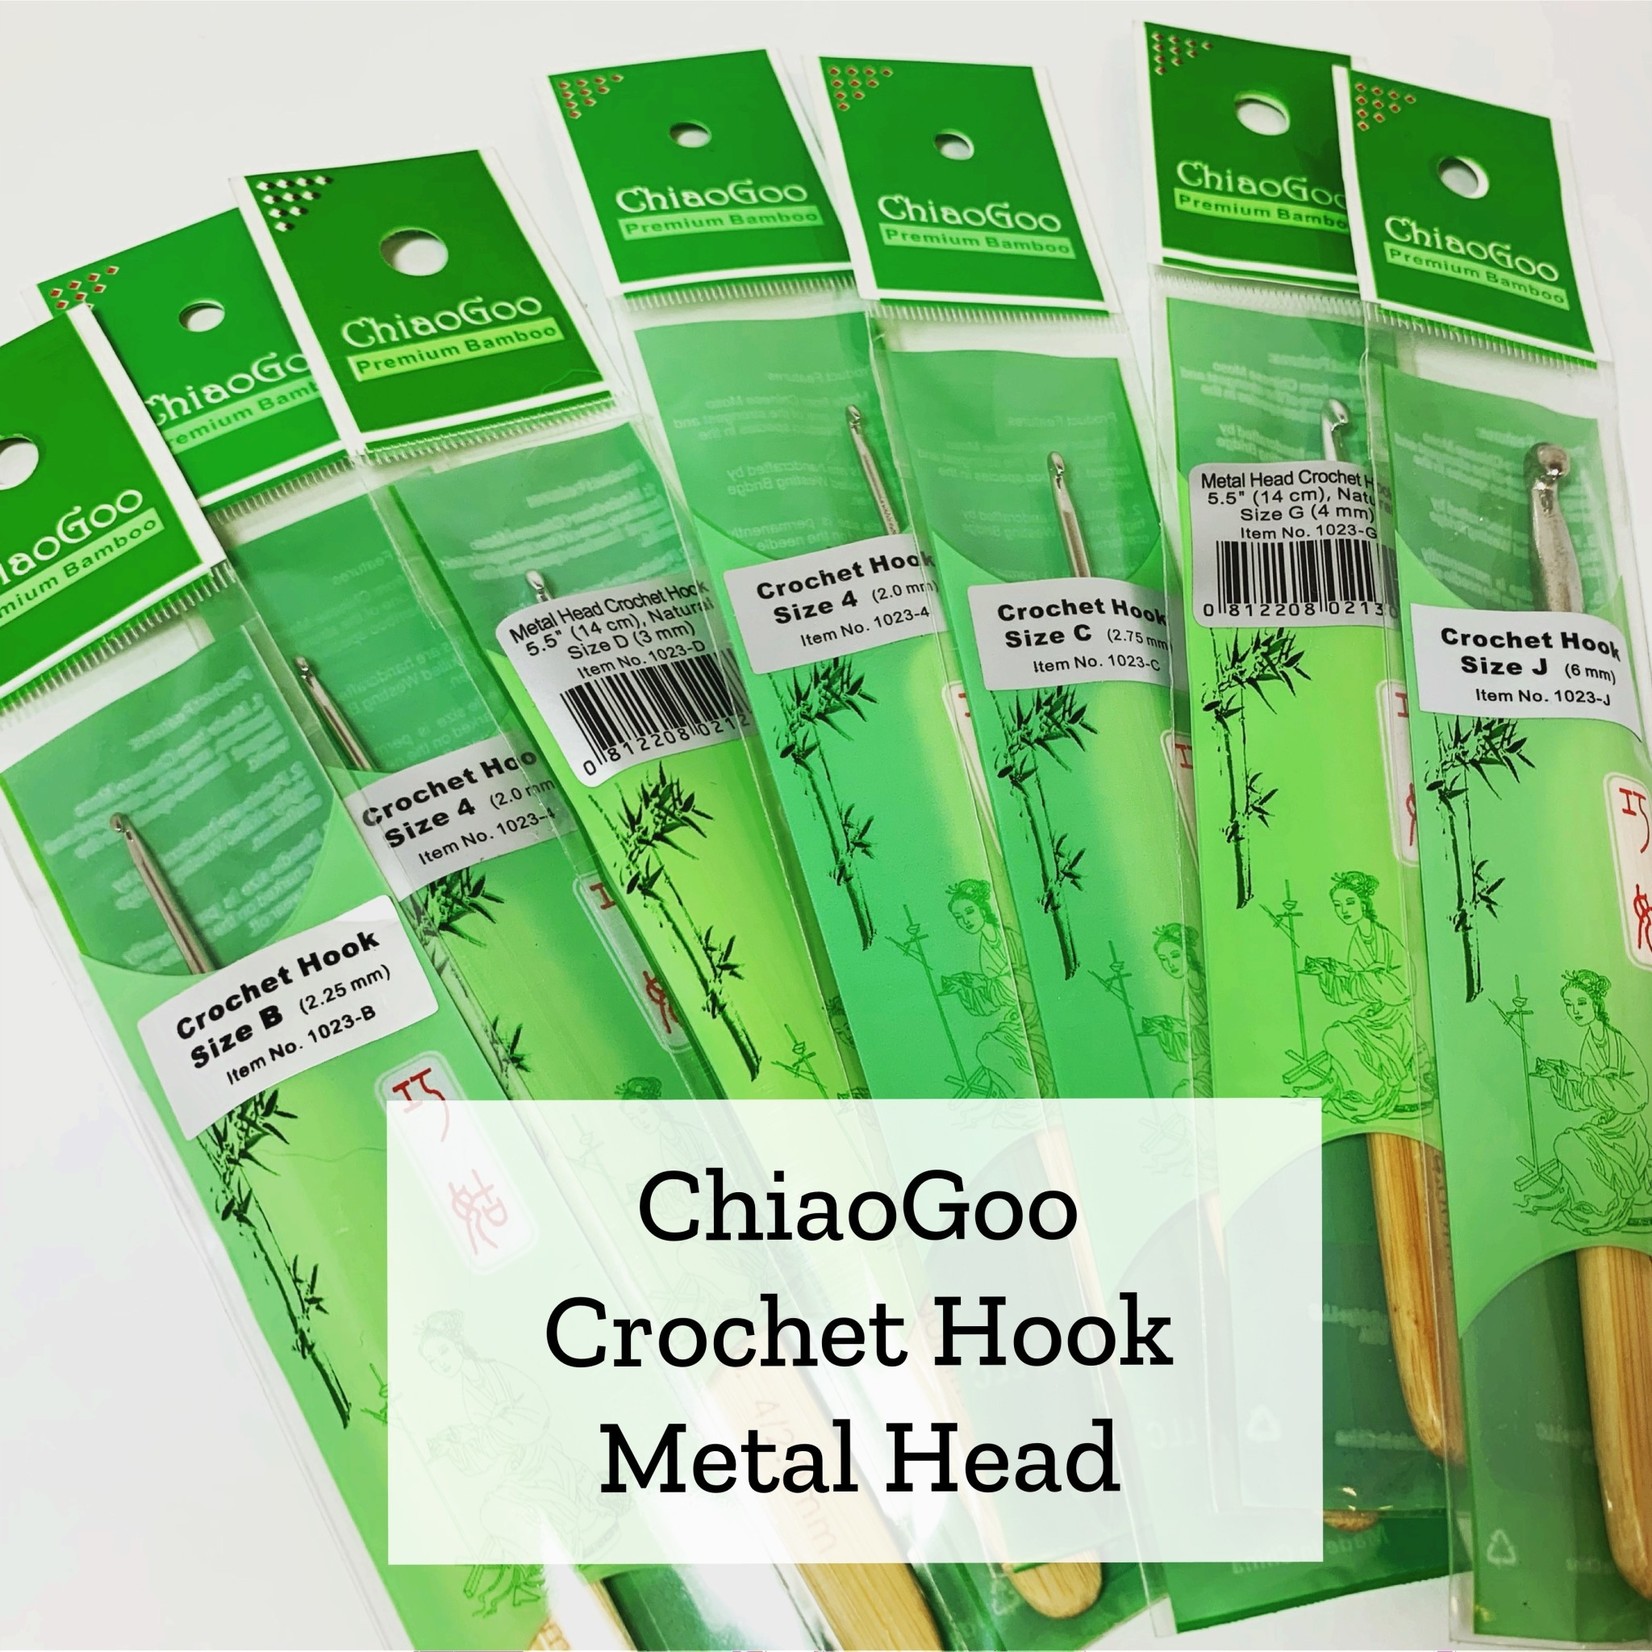 ChiaoGoo Metal Head Crochet Hook  - 2.25 mm